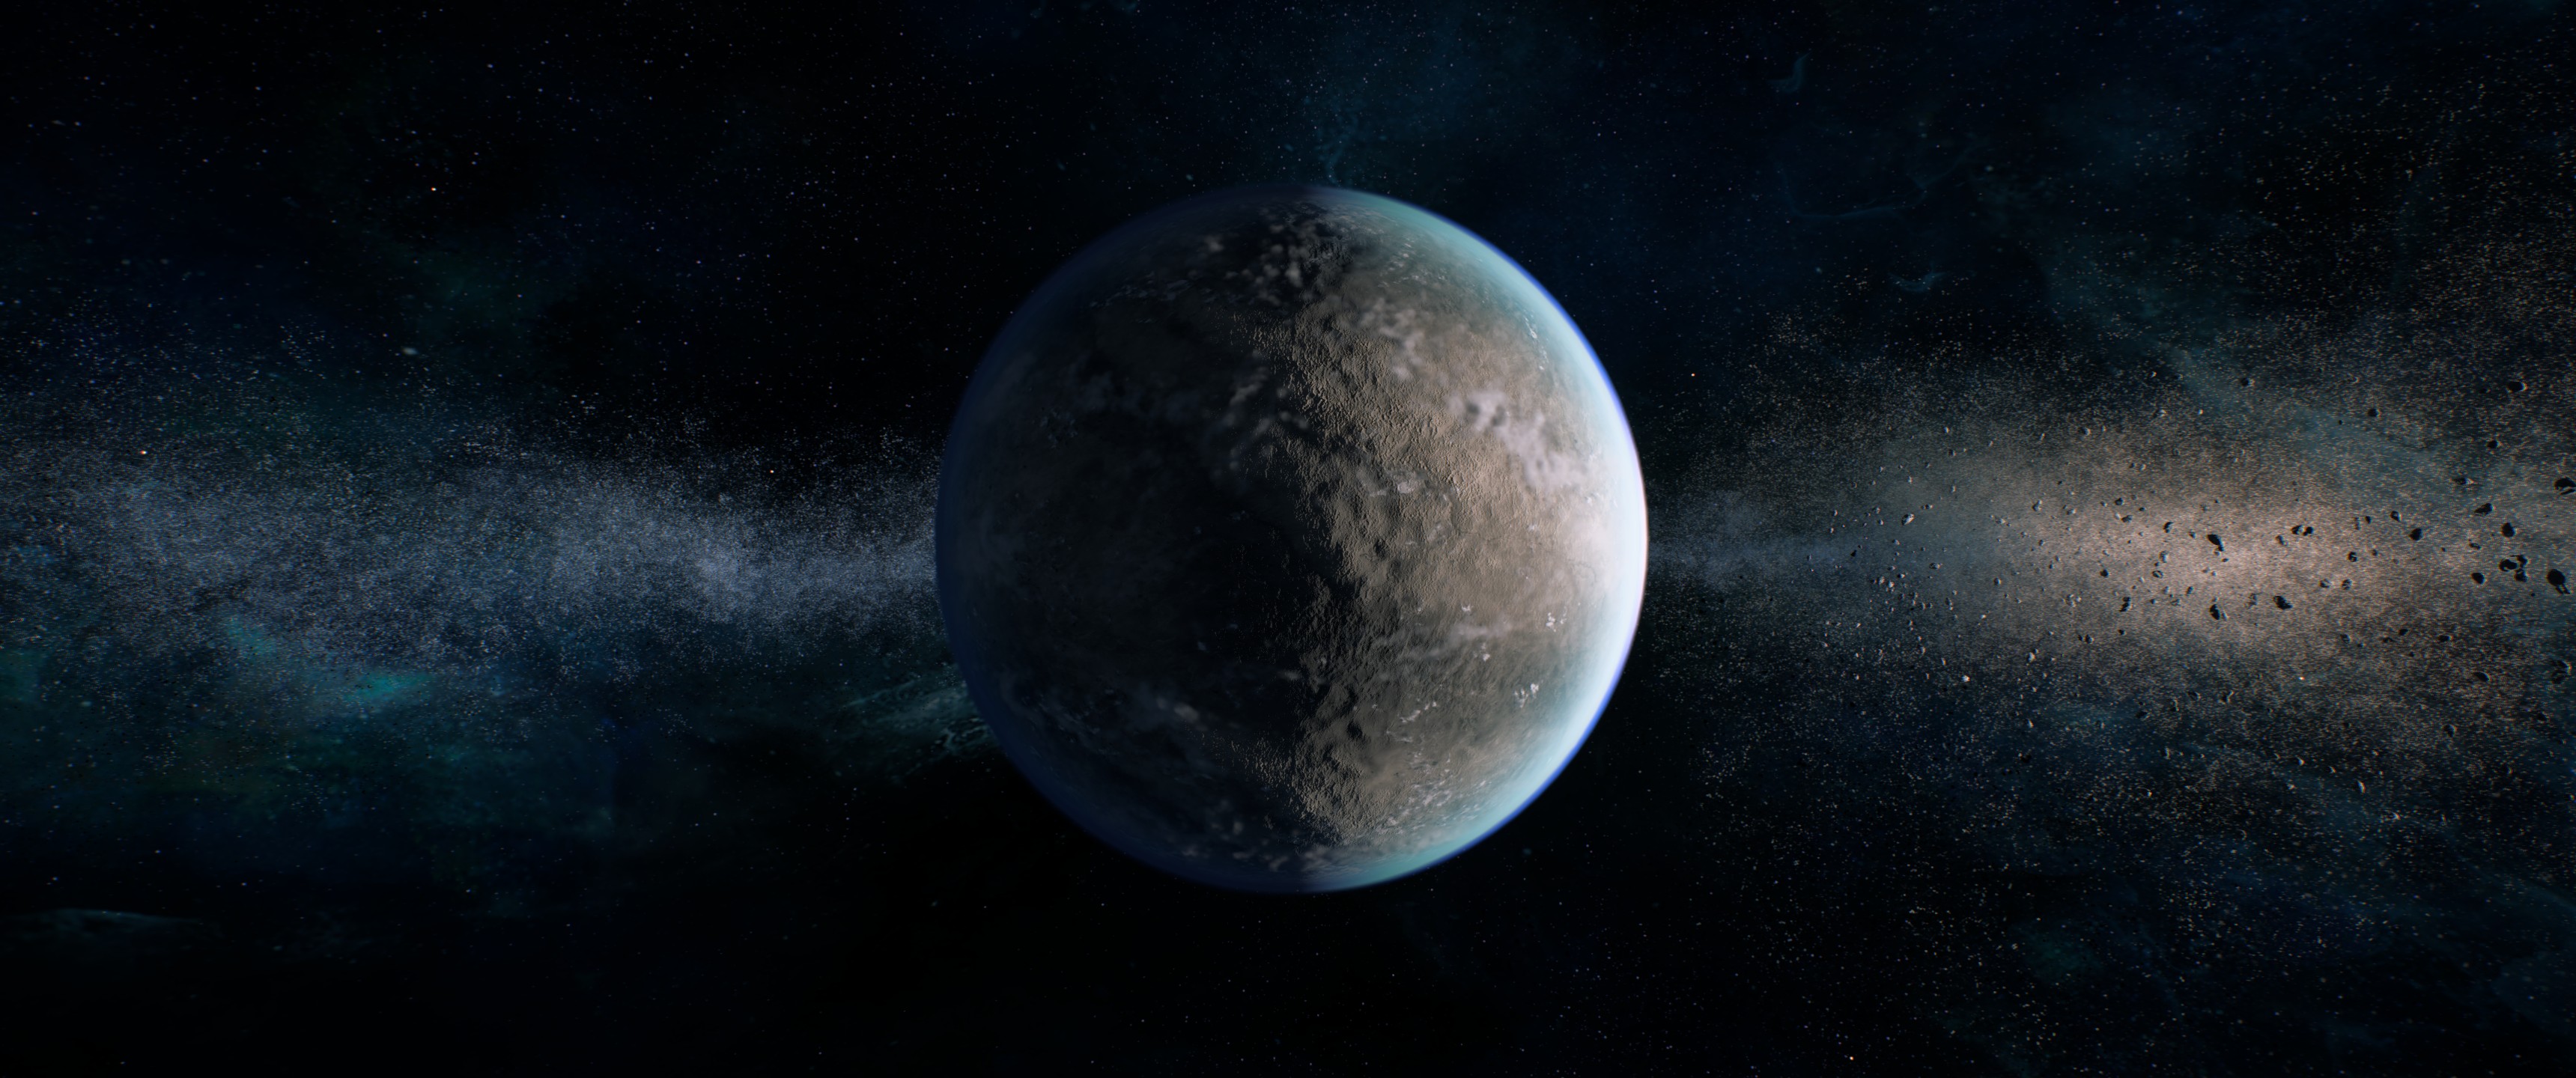 Mass Effect: Andromeda, Mass Effect Wallpaper